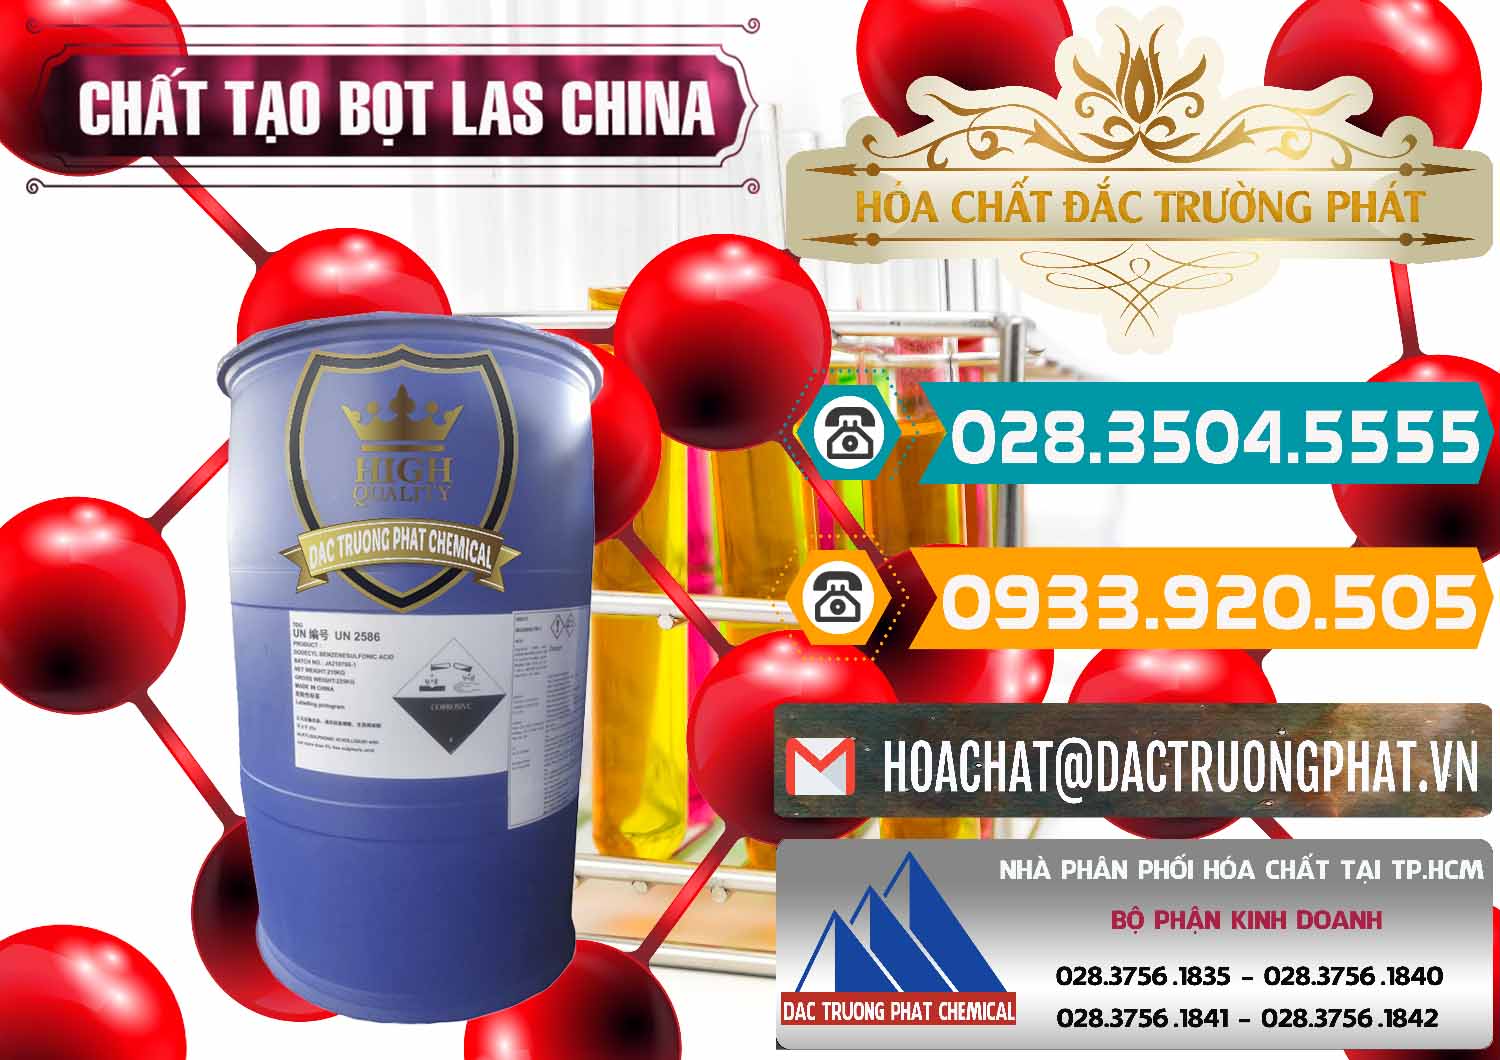 Cty chuyên nhập khẩu _ bán Chất tạo bọt Las Trung Quốc China - 0451 - Nơi chuyên bán và cung cấp hóa chất tại TP.HCM - congtyhoachat.vn